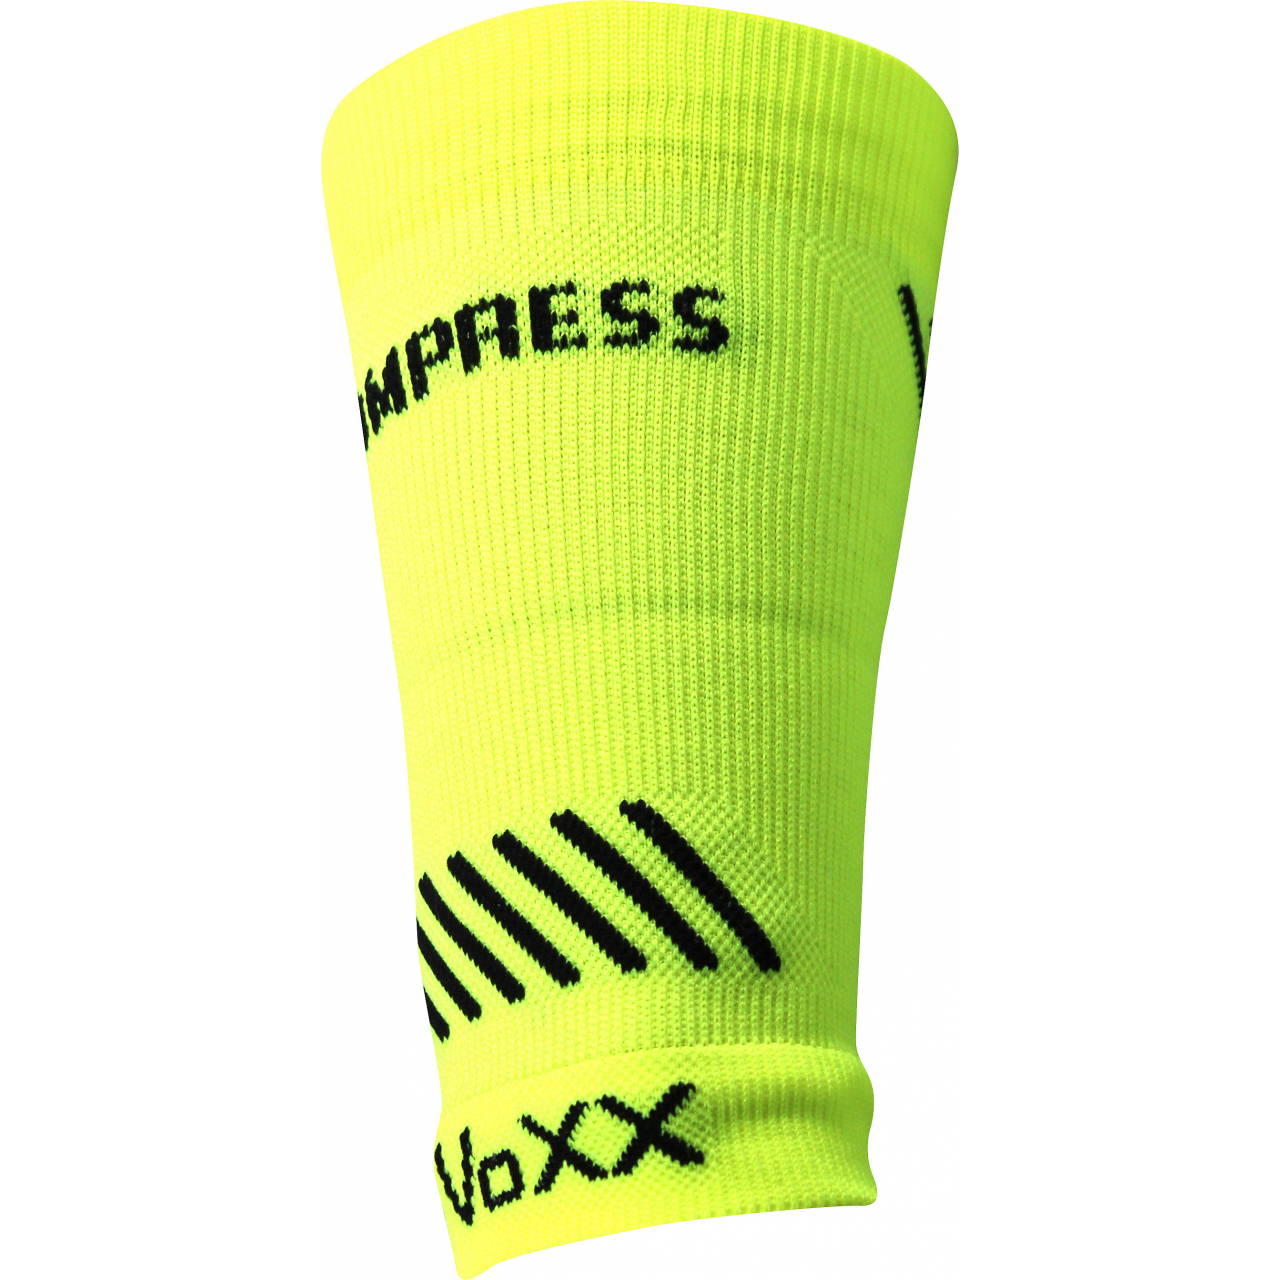 Návlek kompresní Voxx Protect zápěstí - žlutý svítící, S/M